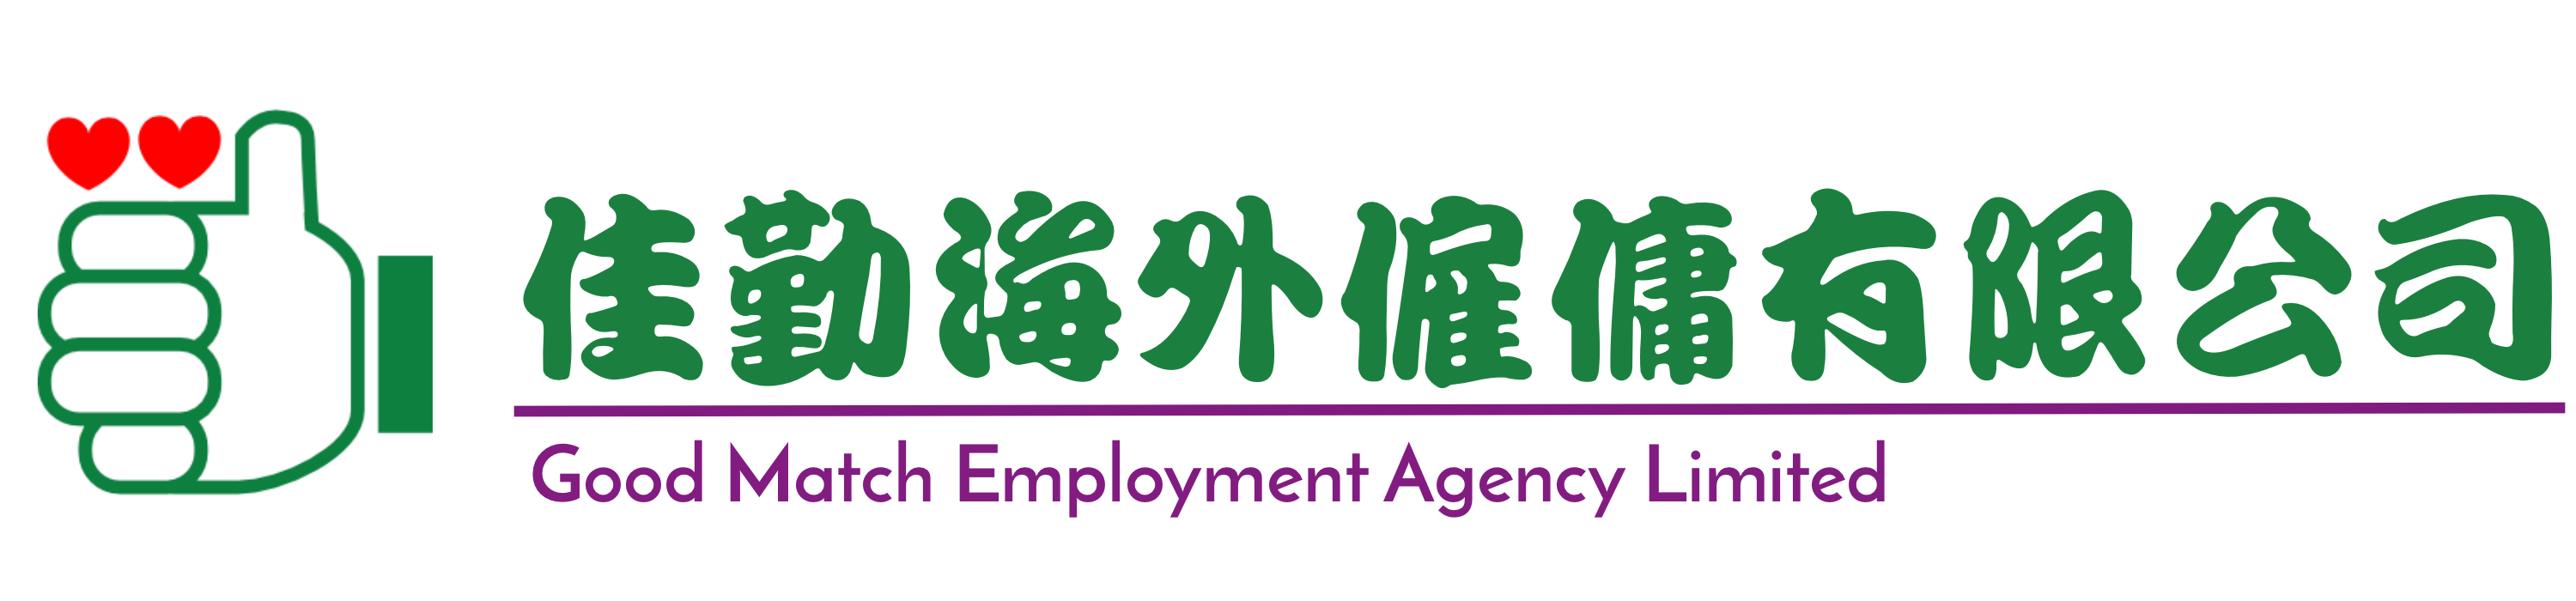 Good Match Employment Agency